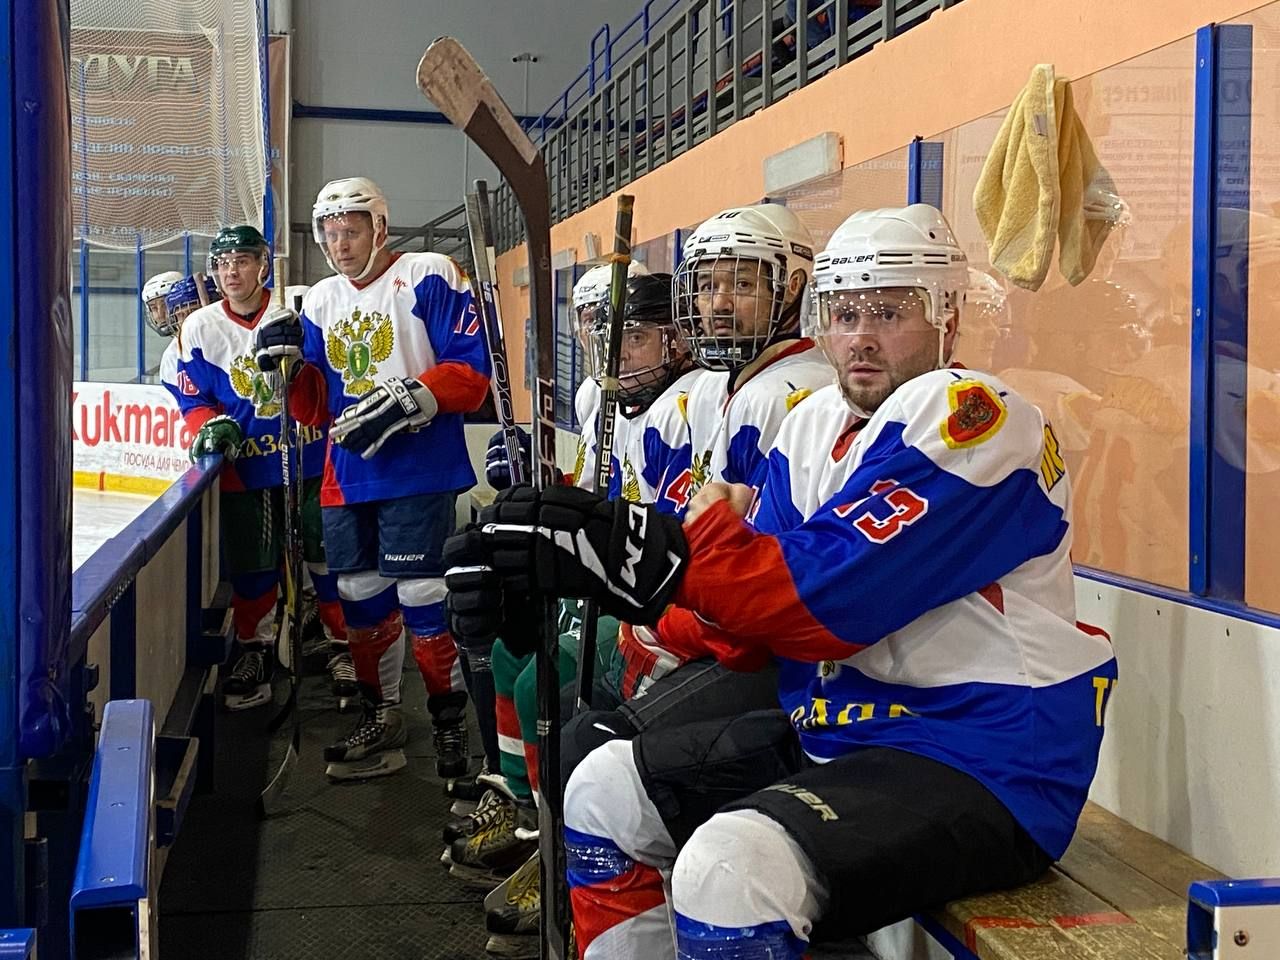 В Кукморе проходит юбилейный турнир по хоккею с шайбой на «Кубок звезд»